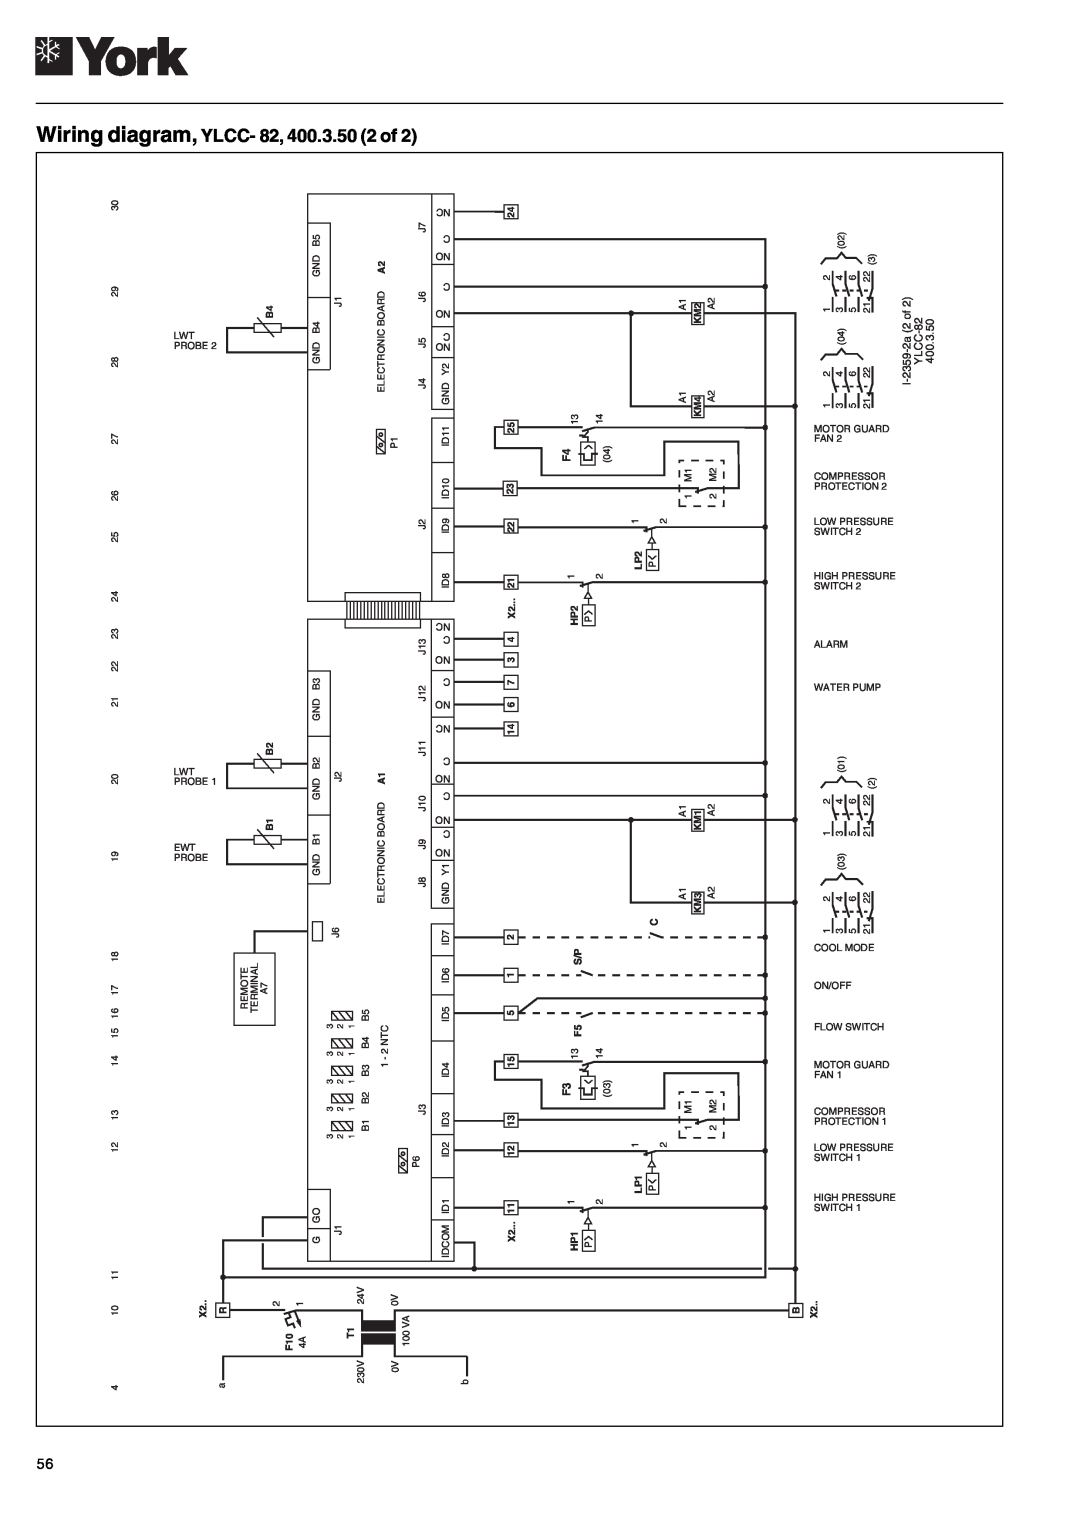 York YLCC 42/62/82/102/112, YLCC-h, 122, 152 manual diagram,YLCC, Wiring, 400.3.50 